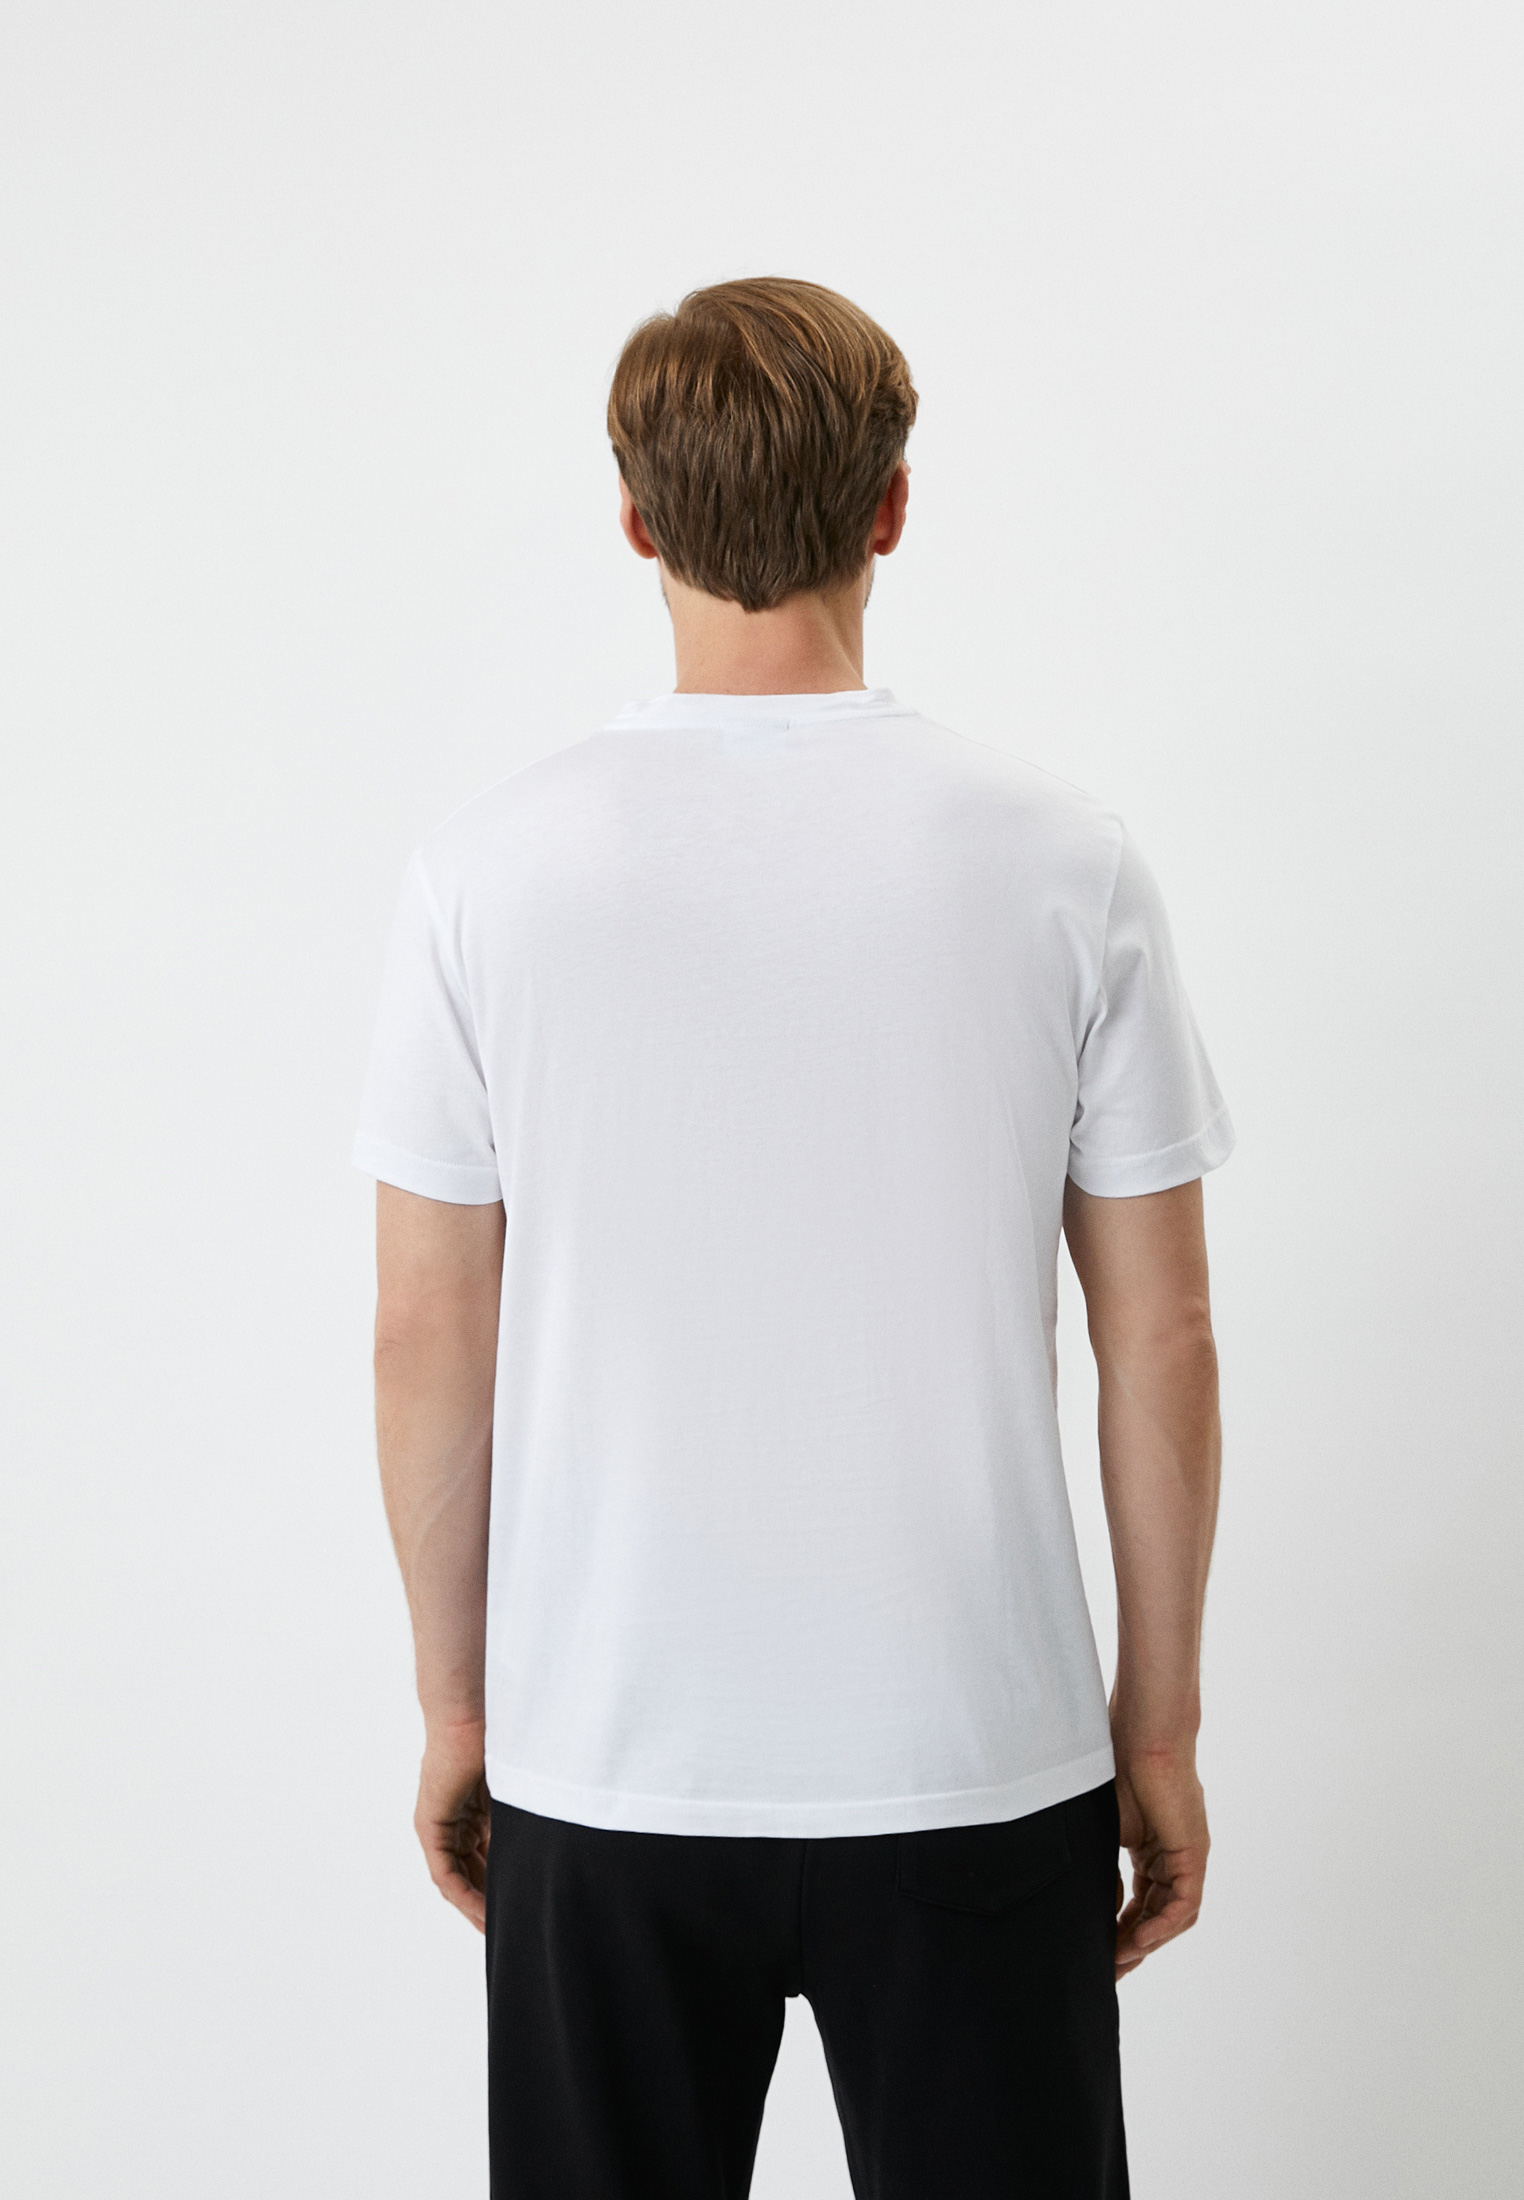 Мужская футболка Baldinini (Балдинини) M500: изображение 3